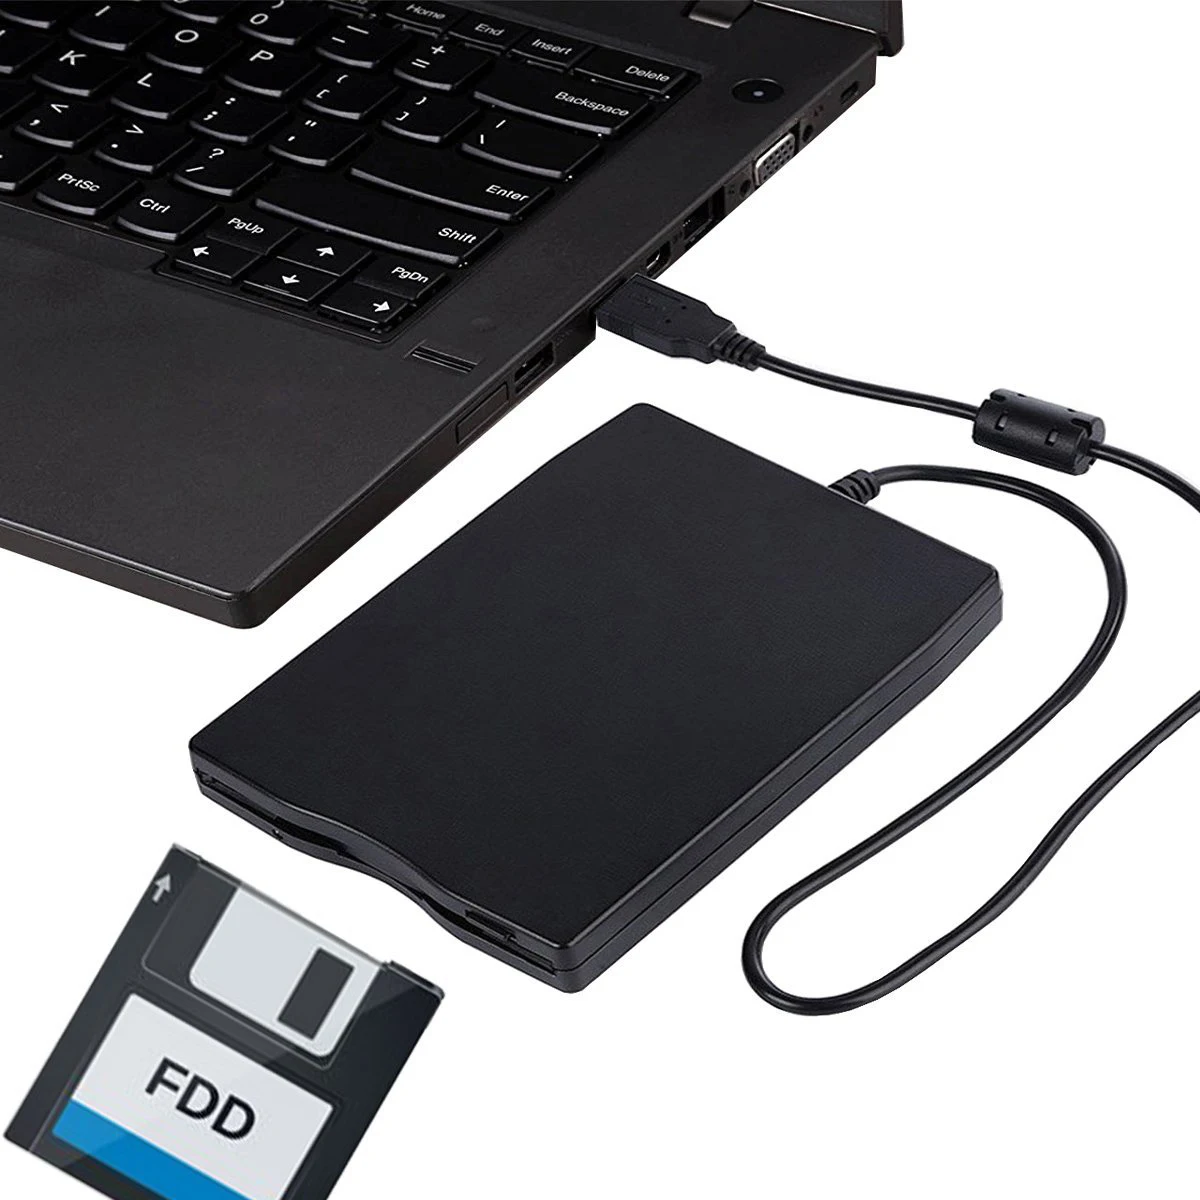 USB дисковод гибких дисков 3 5 дюймов внешний 1 44 МБ FDD Портативный флеш накопитель